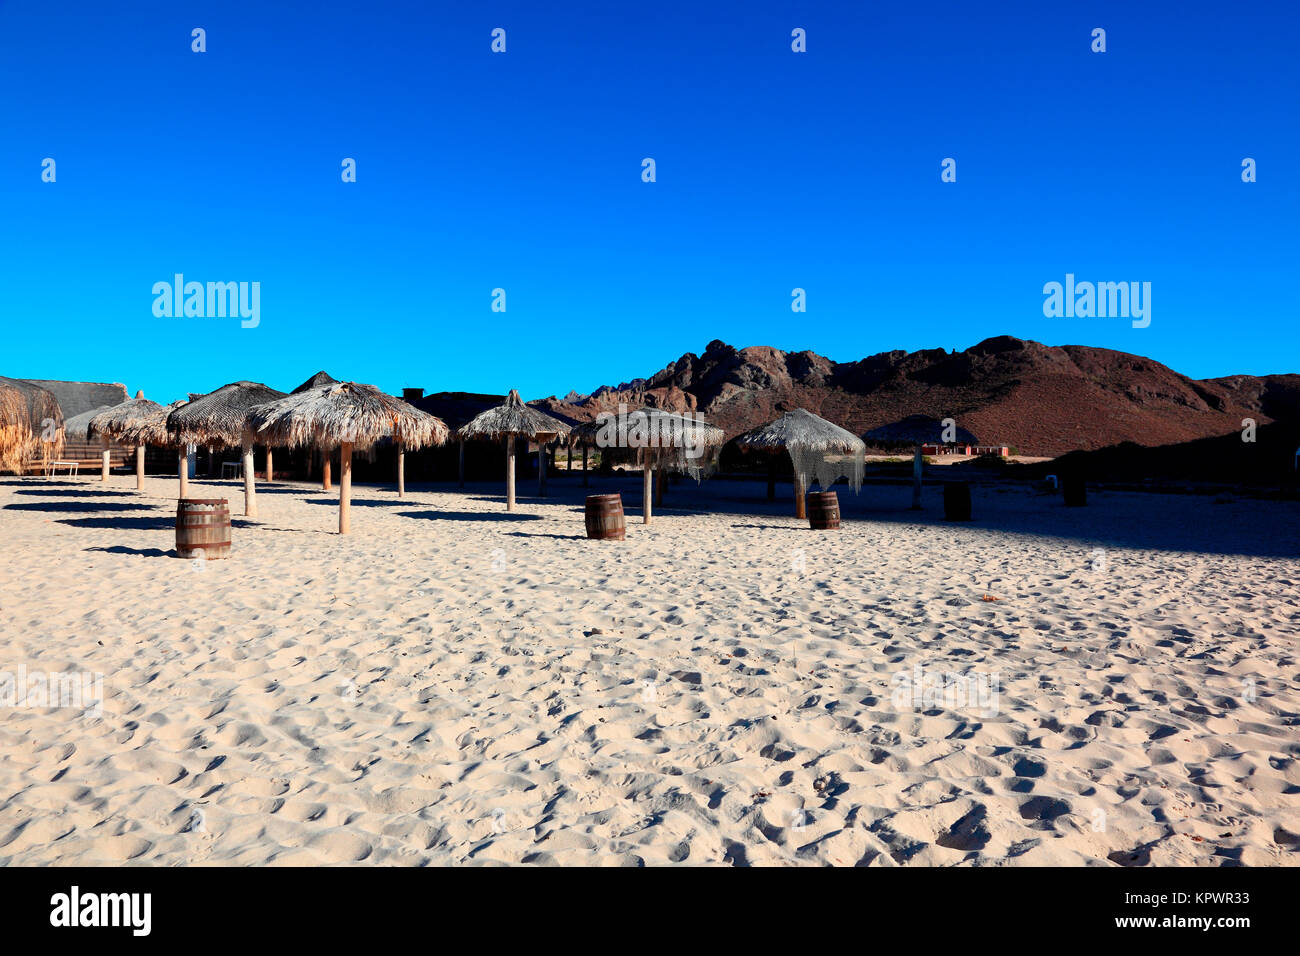 palapas on a sandy beach Stock Photo